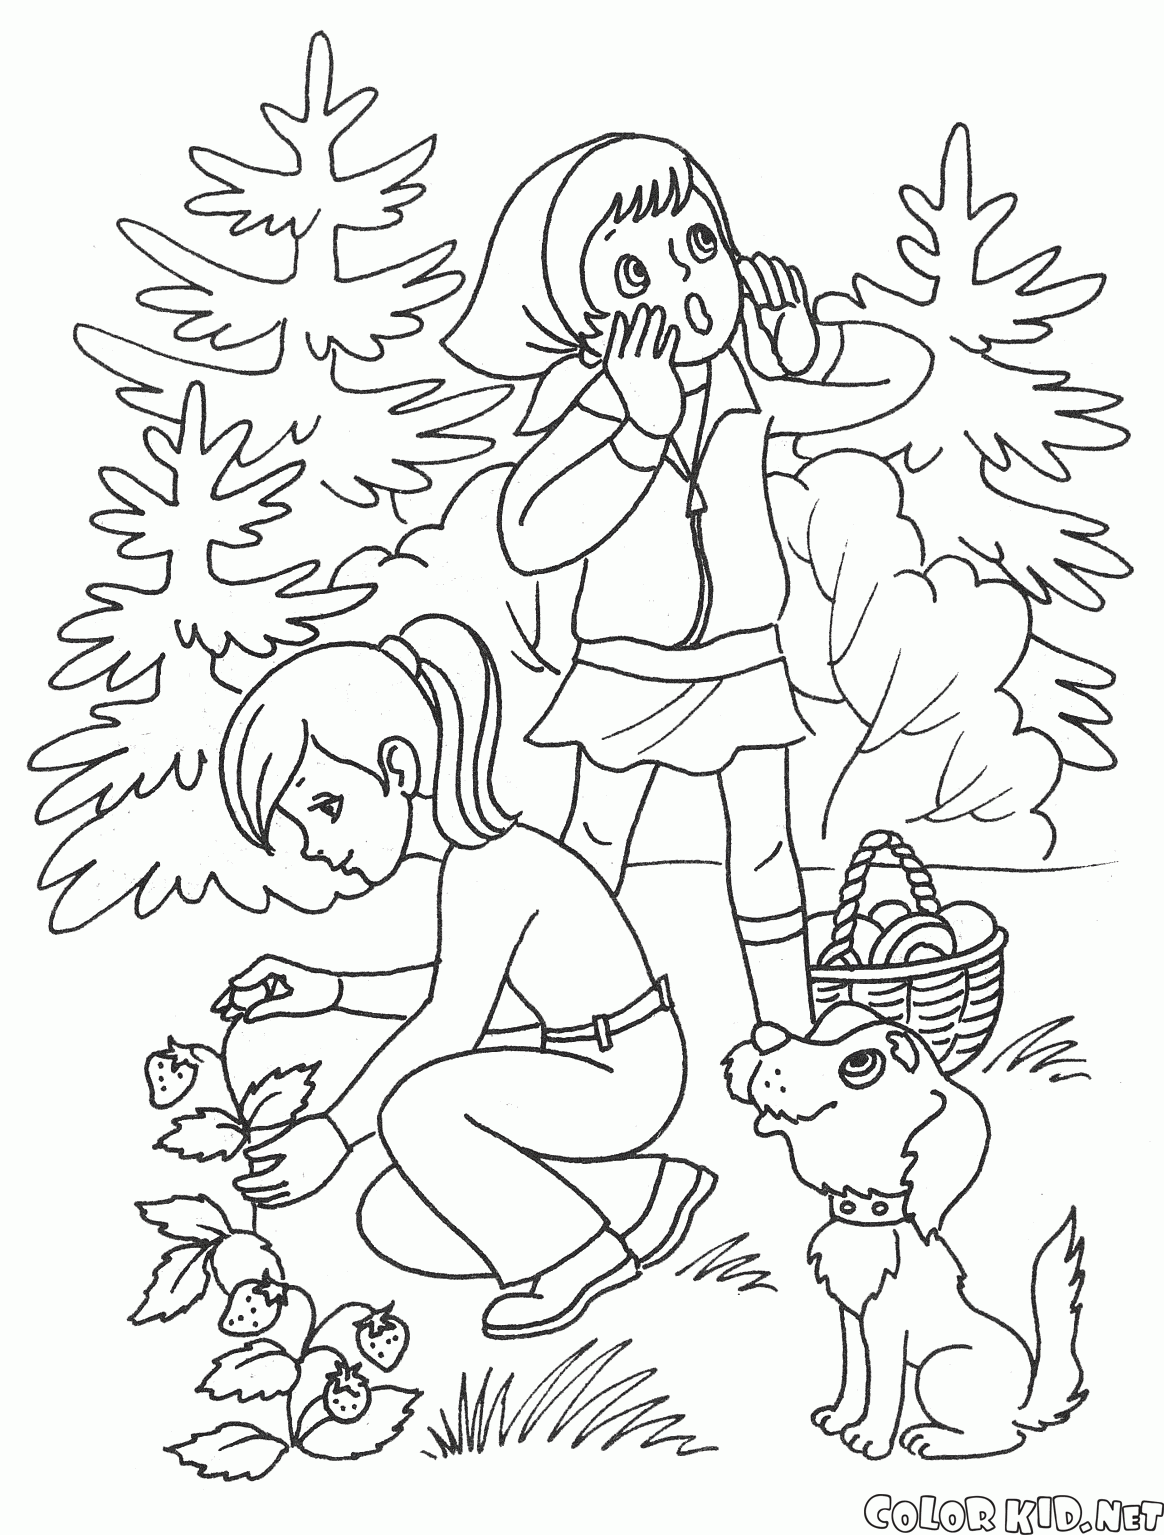 Kinder im Sommer im Wald